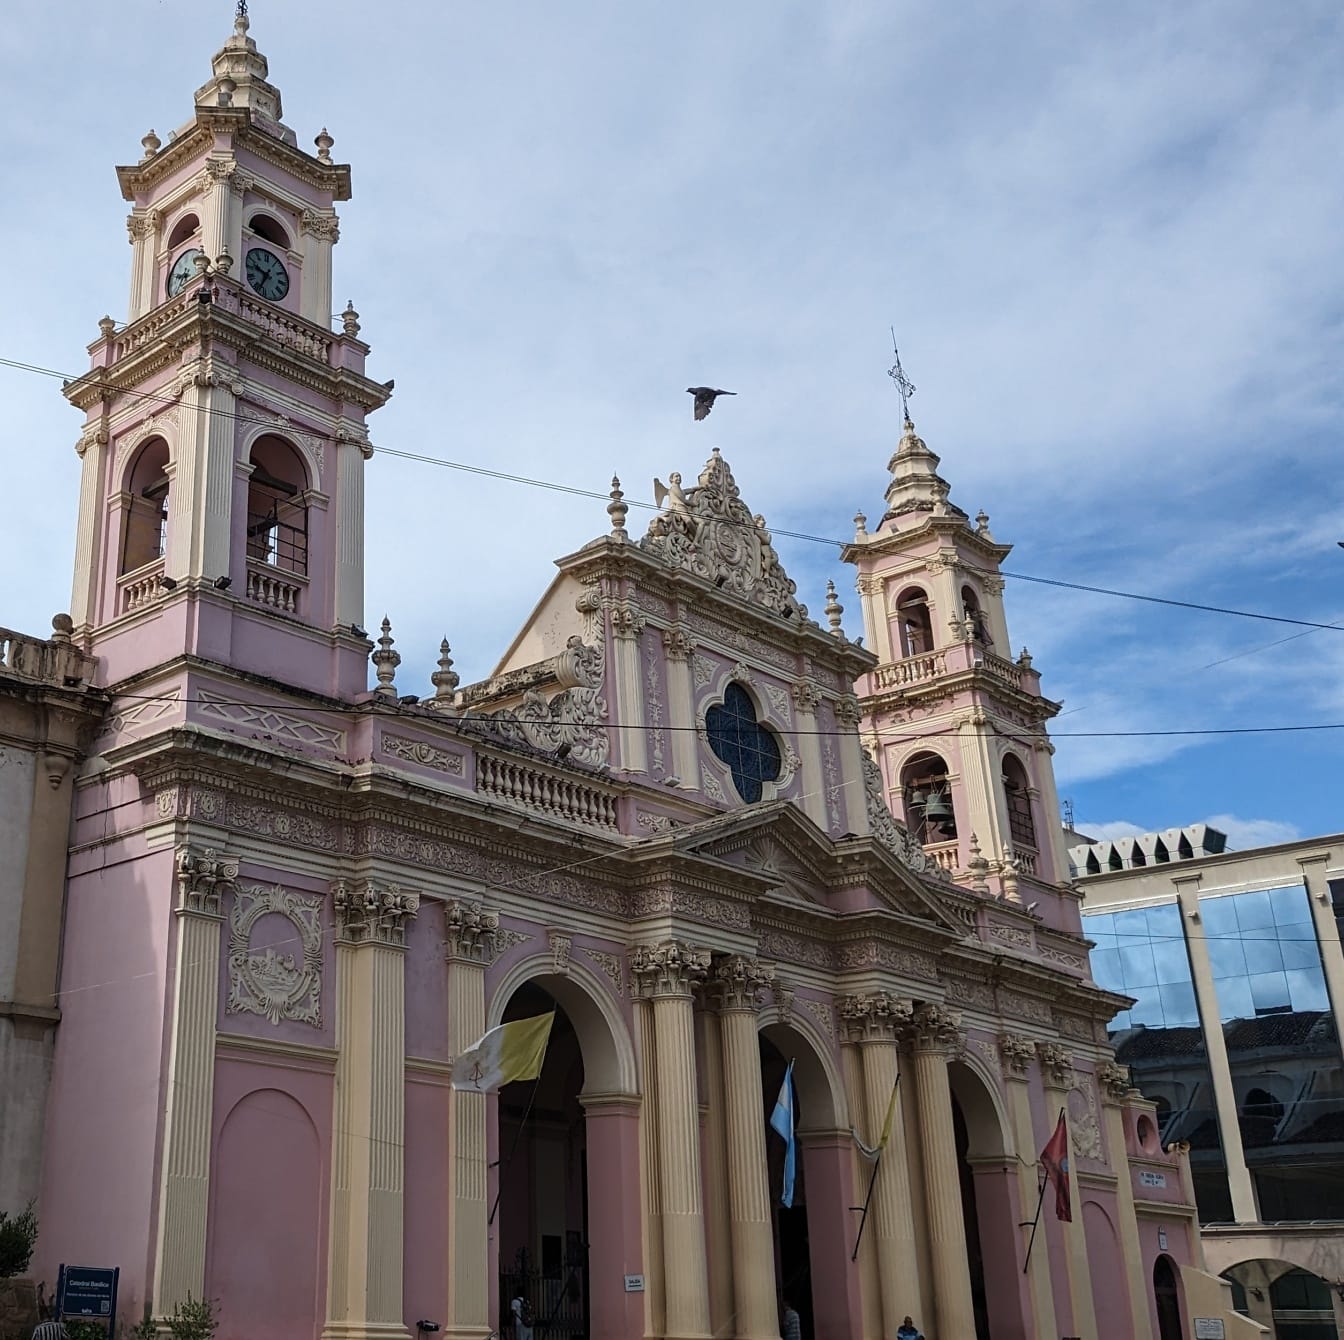 Basilica Cattedrale di Salta in Argentina in stile architettonico coloniale con colore rosato sulle pareti